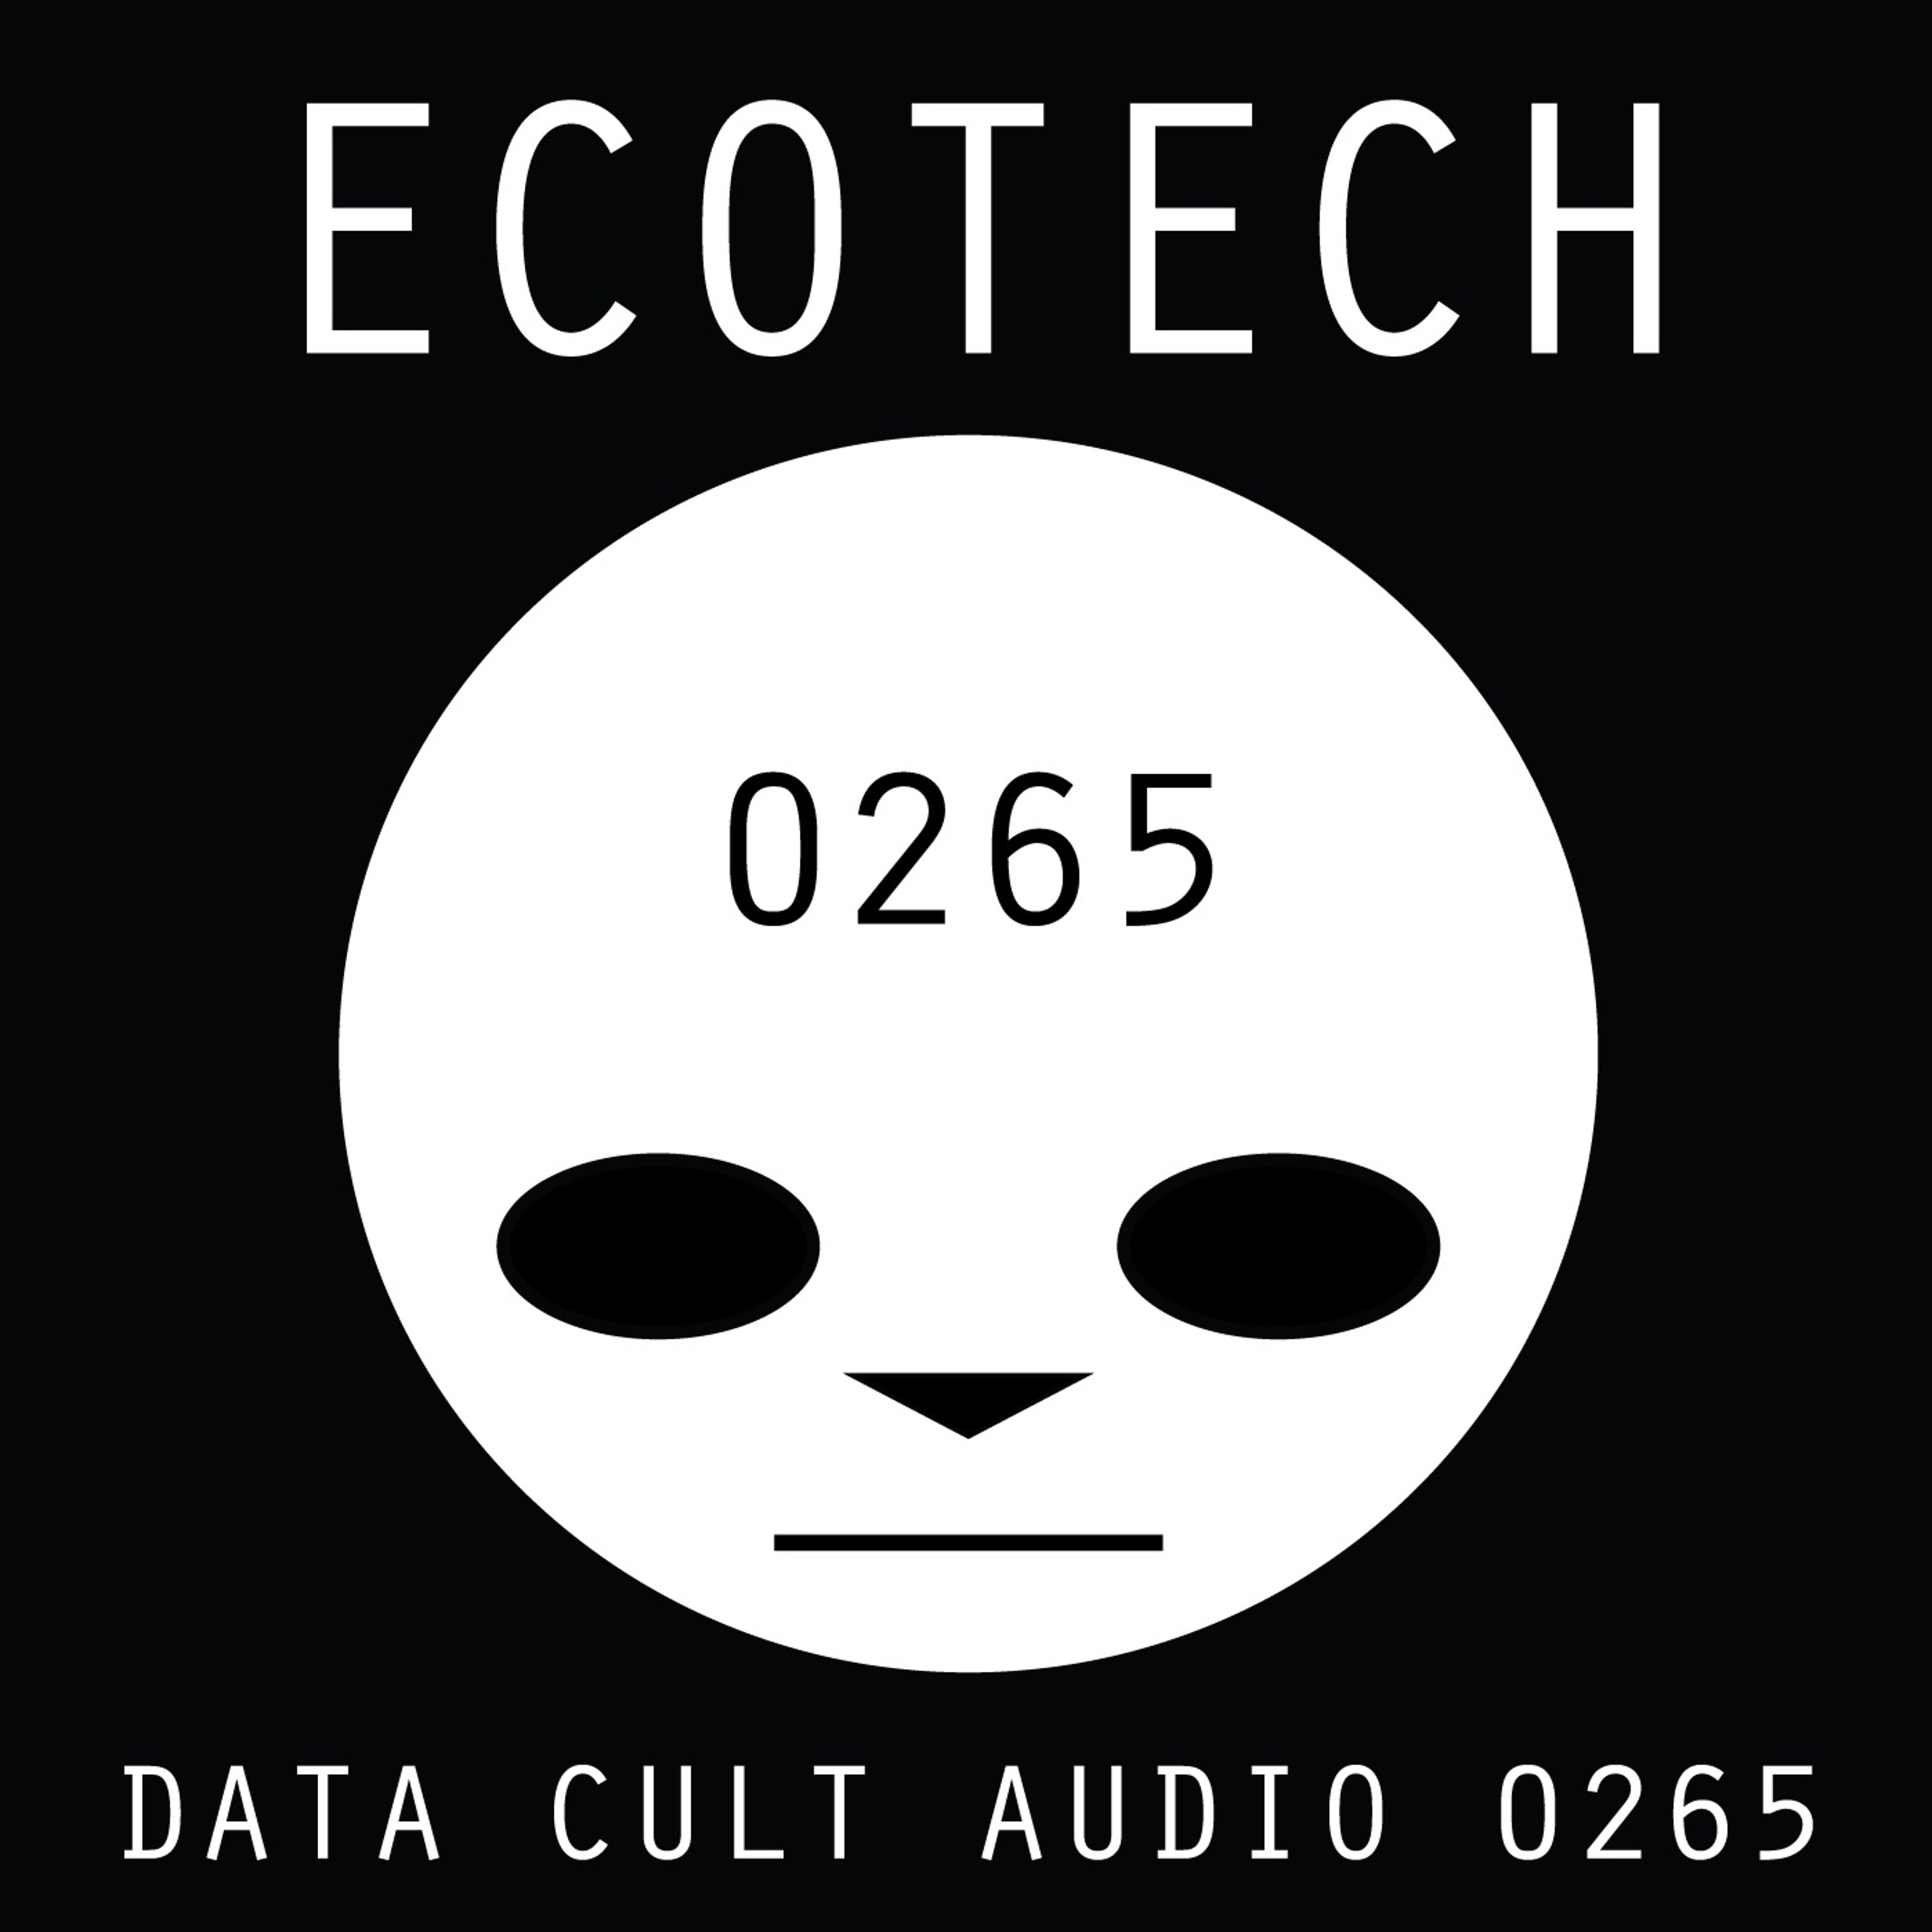 Data Cult Audio 0265 - Ecotech